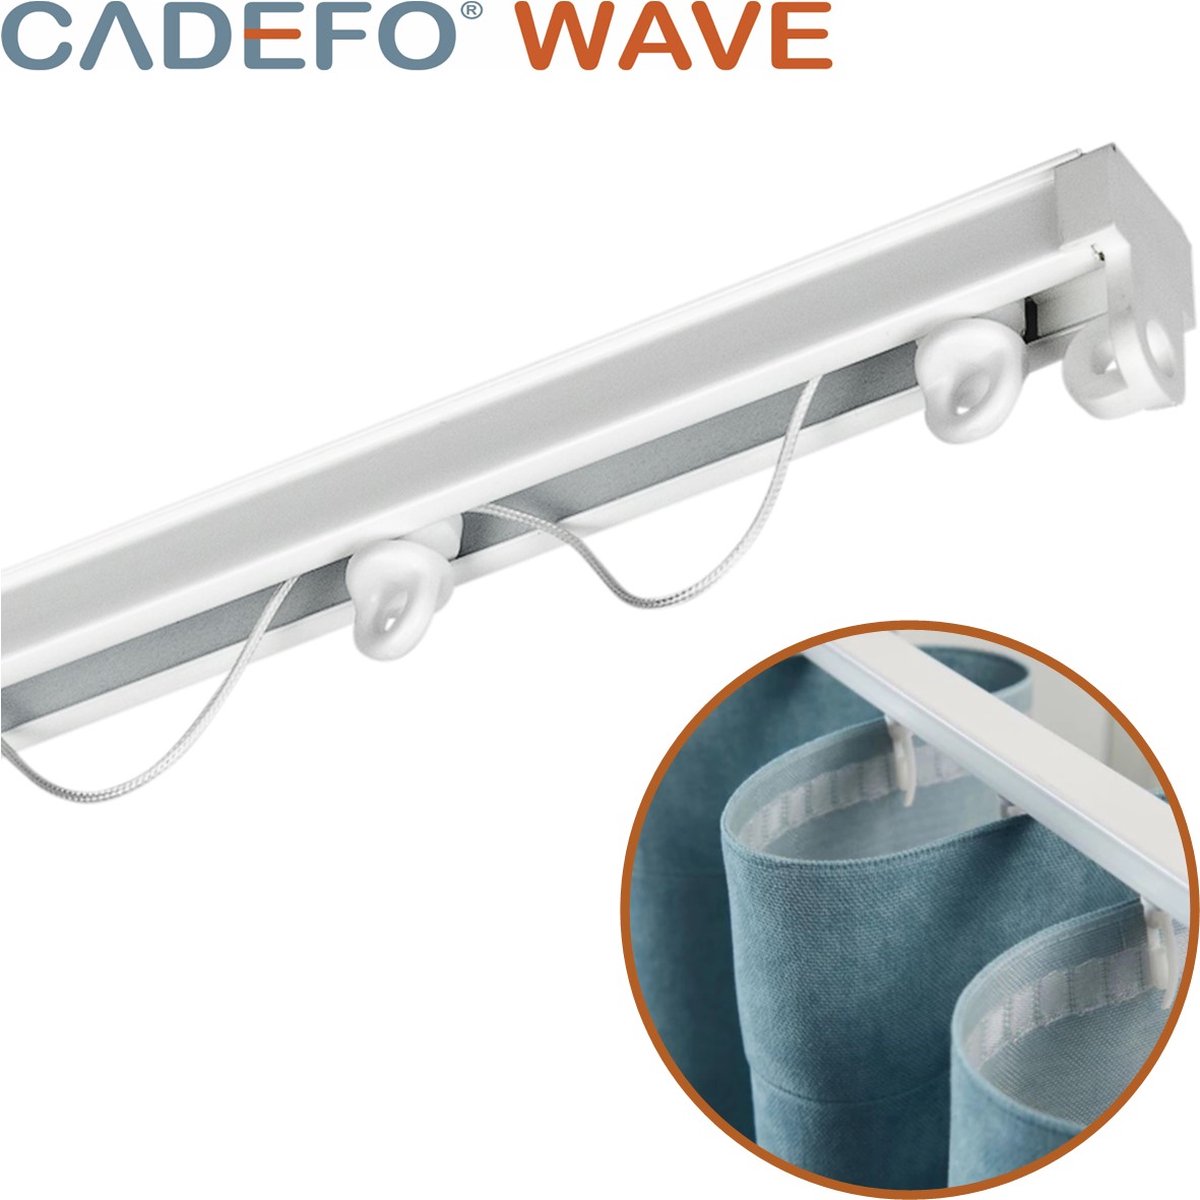 CADEFO WAVE (401 - 450 cm) Gordijnrails - Compleet op maat! - UIT 1 STUK - Leverbaar tot 6 meter - Plafondbevestiging - Lengte 425 cm